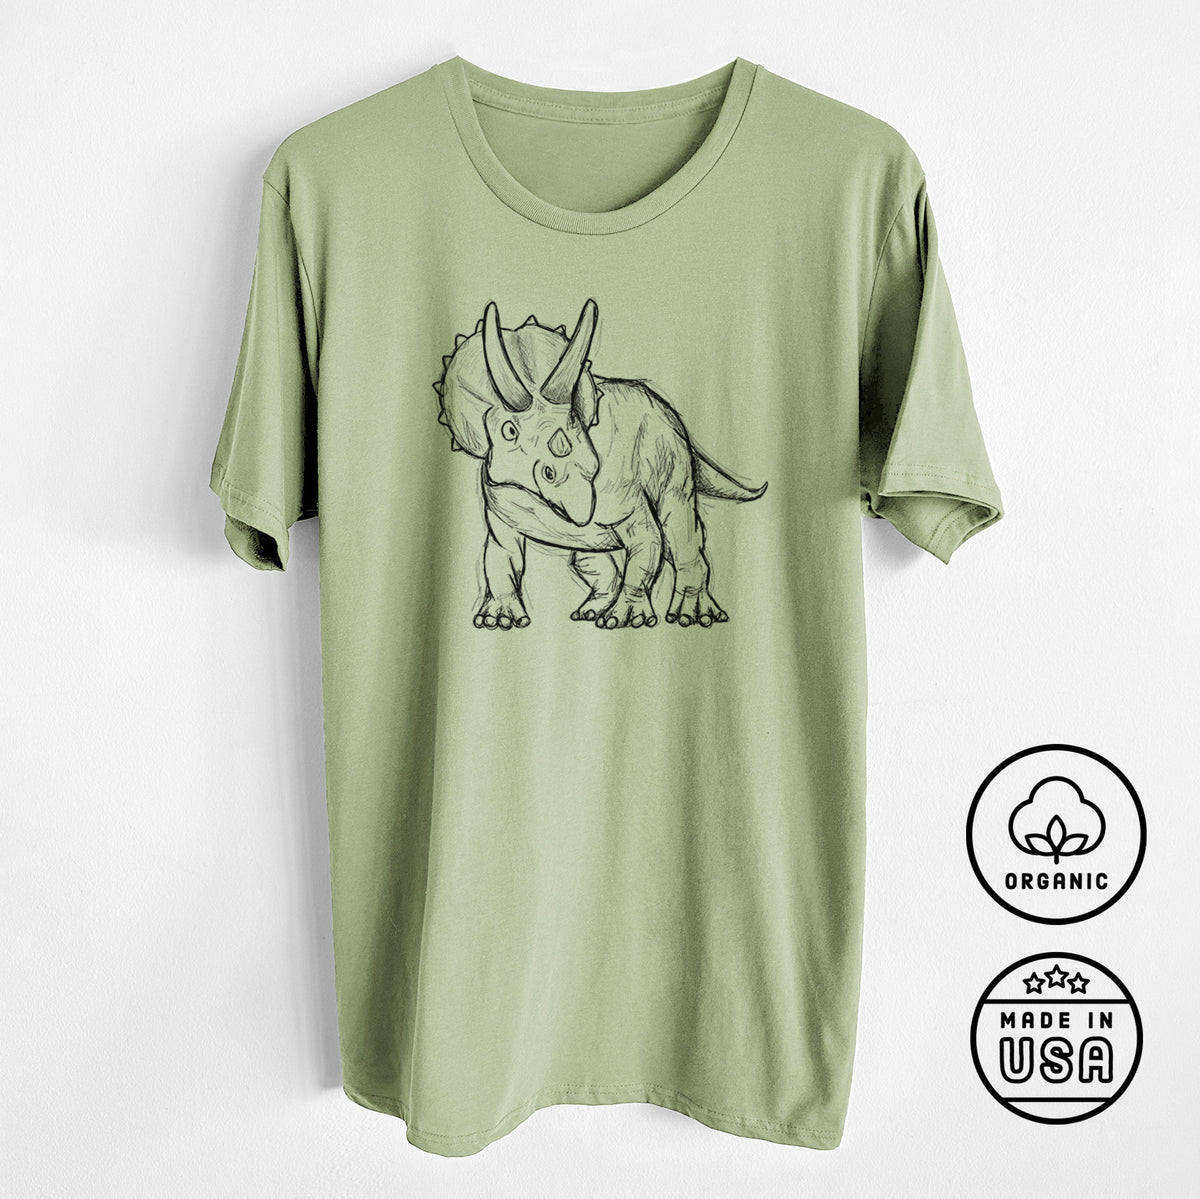 Triceratops Horridus - Unisex Crewneck - Made in USA - 100% Organic Cotton